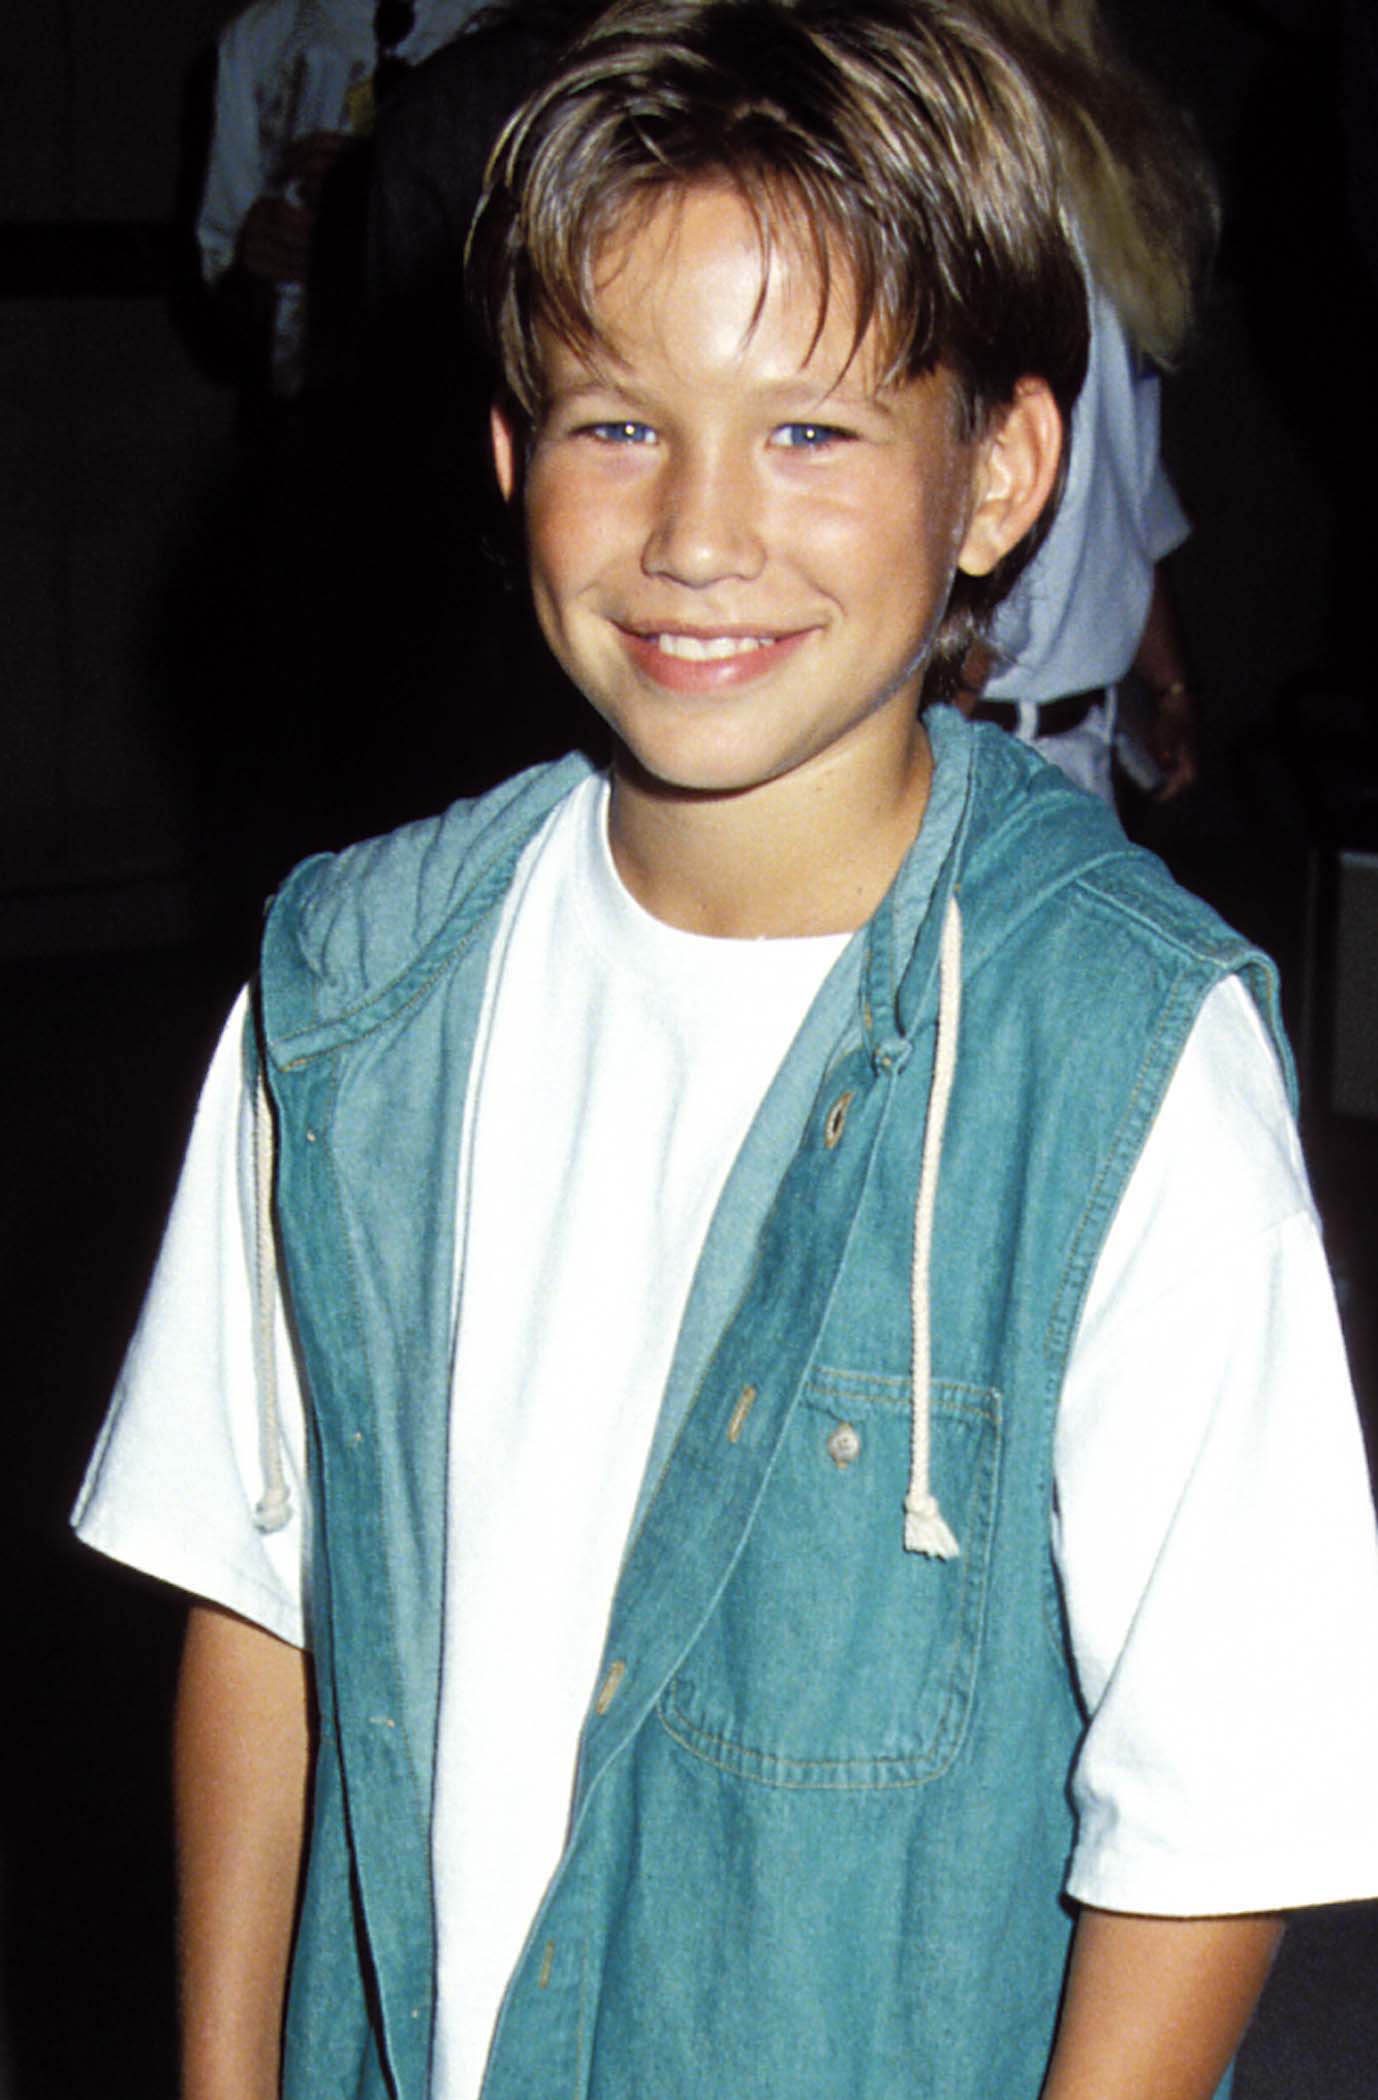 Jonathan Taylor Thomas le 7 septembre 1990 à Santa Monica, Californie | Source : Getty Images